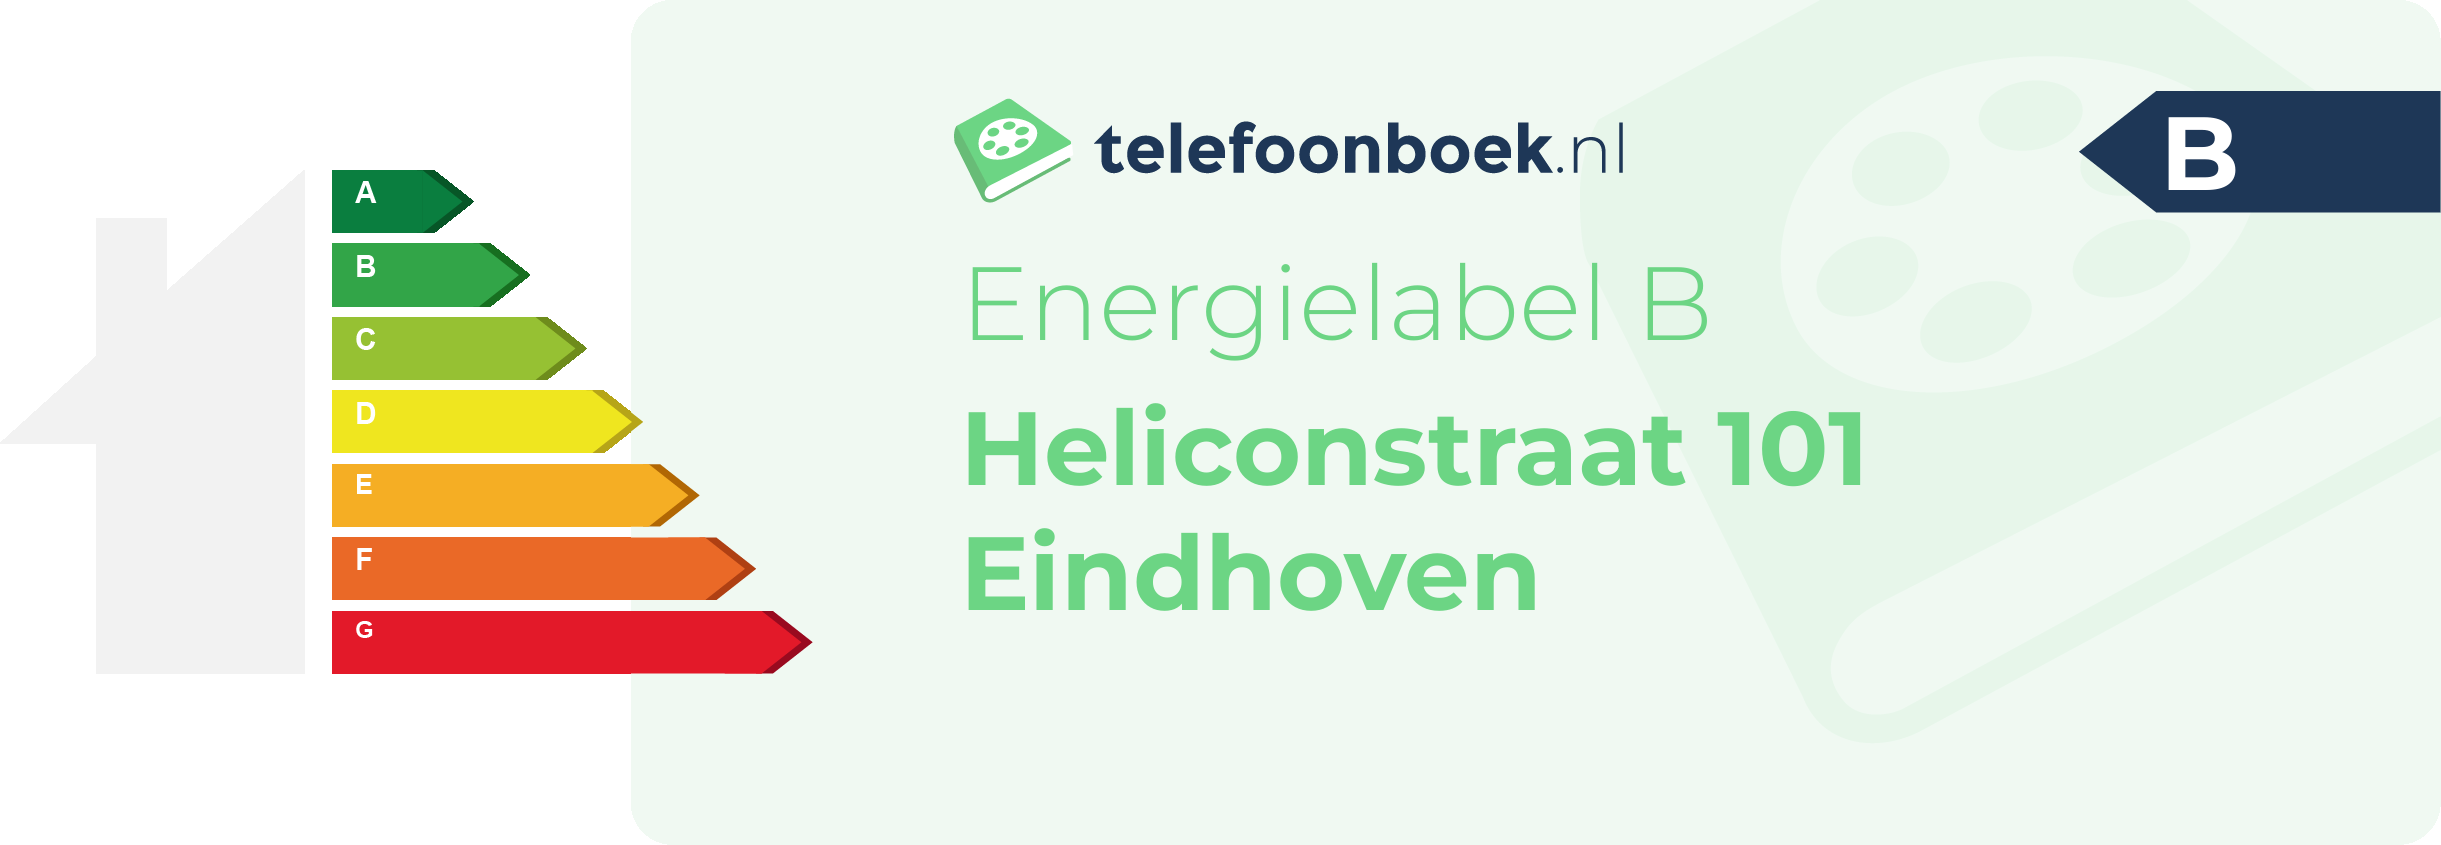 Energielabel Heliconstraat 101 Eindhoven